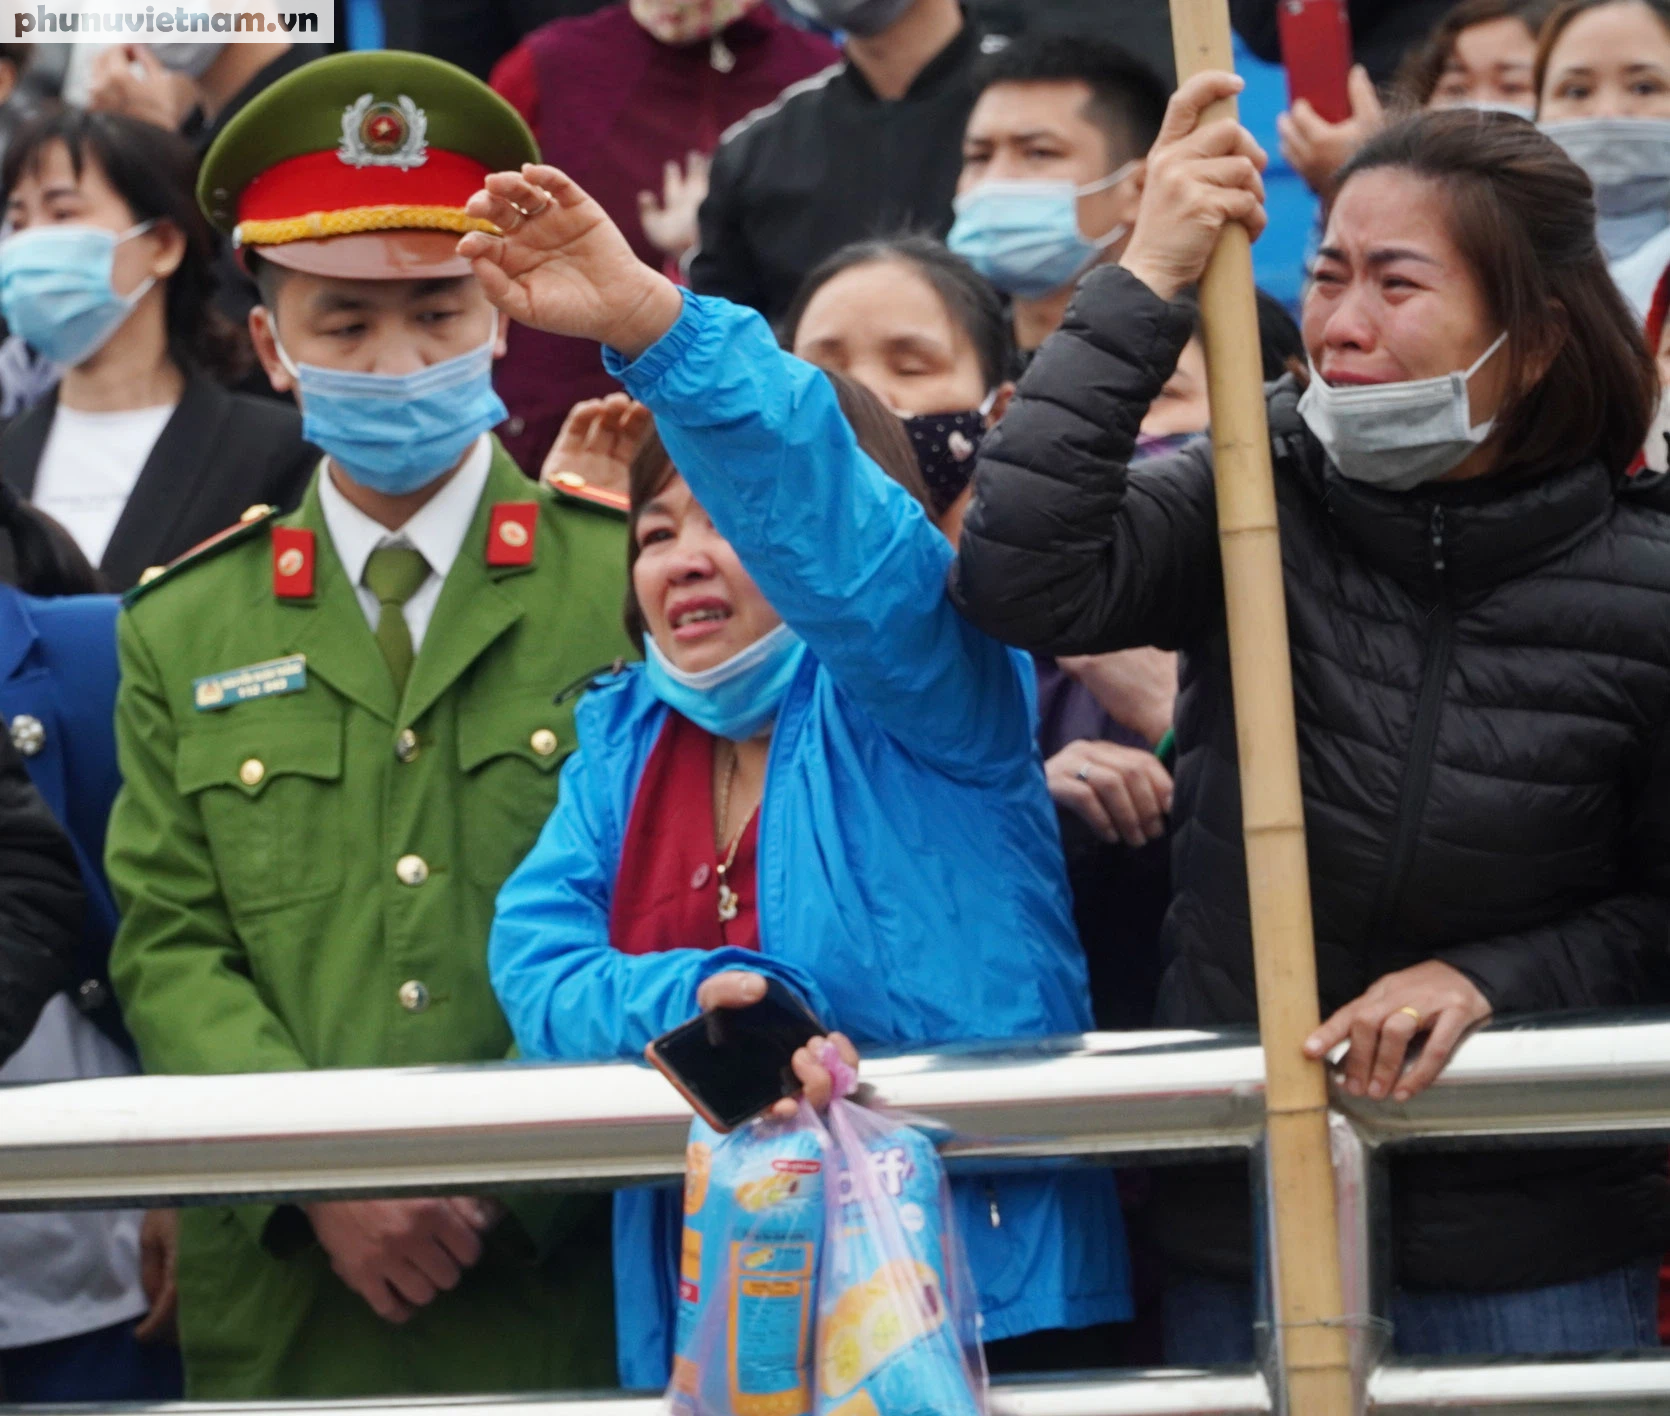 Hà Nội: Nhiều người mẹ khóc đẫm nước mắt, tiễn con lên đường nhập ngũ tại huyện Thanh Trì - Ảnh 23.